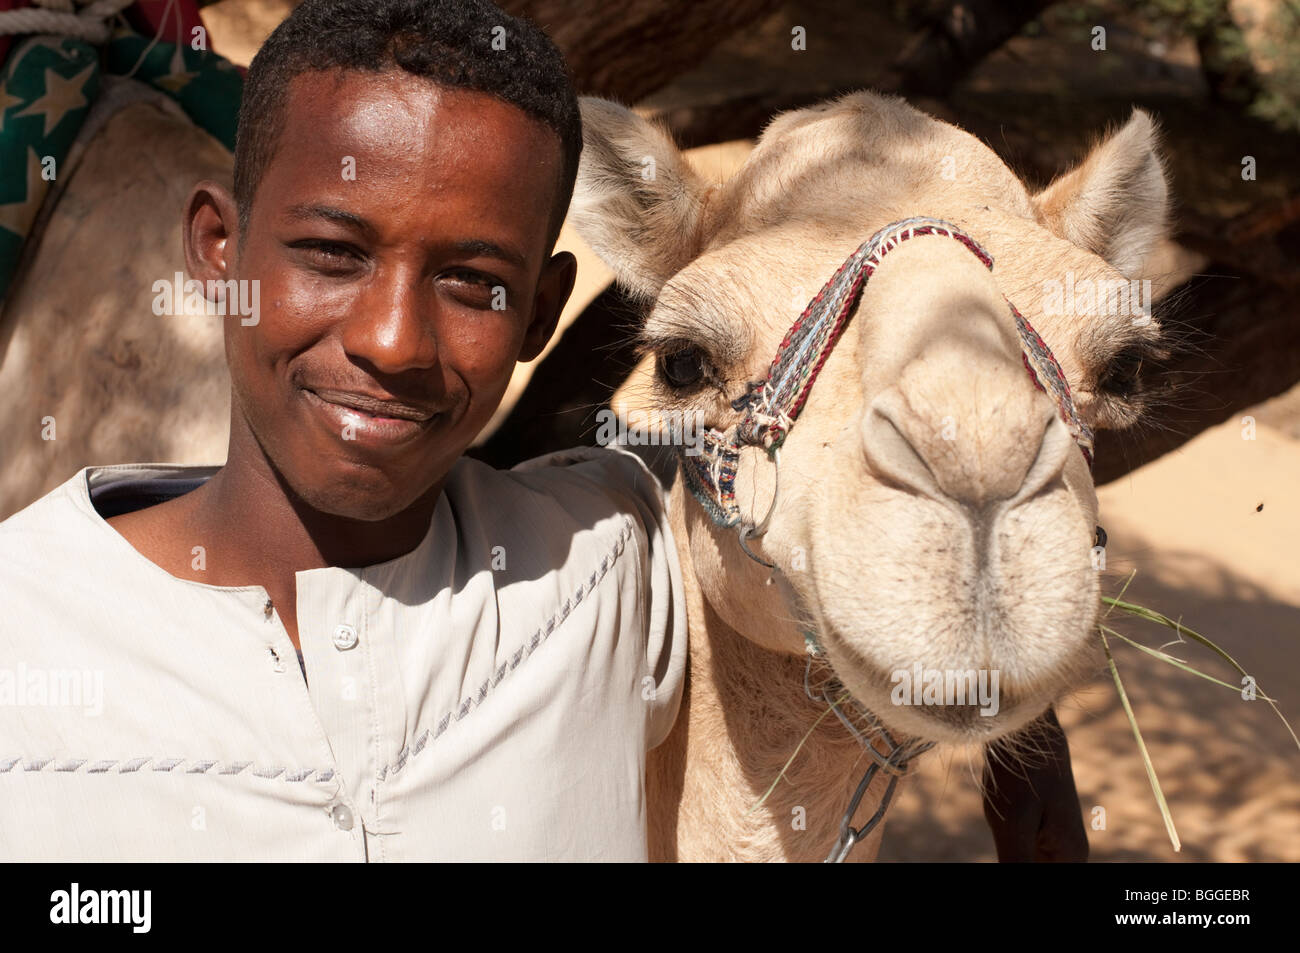 Jeune garçon nubien au Sahara avec son chameau Banque D'Images